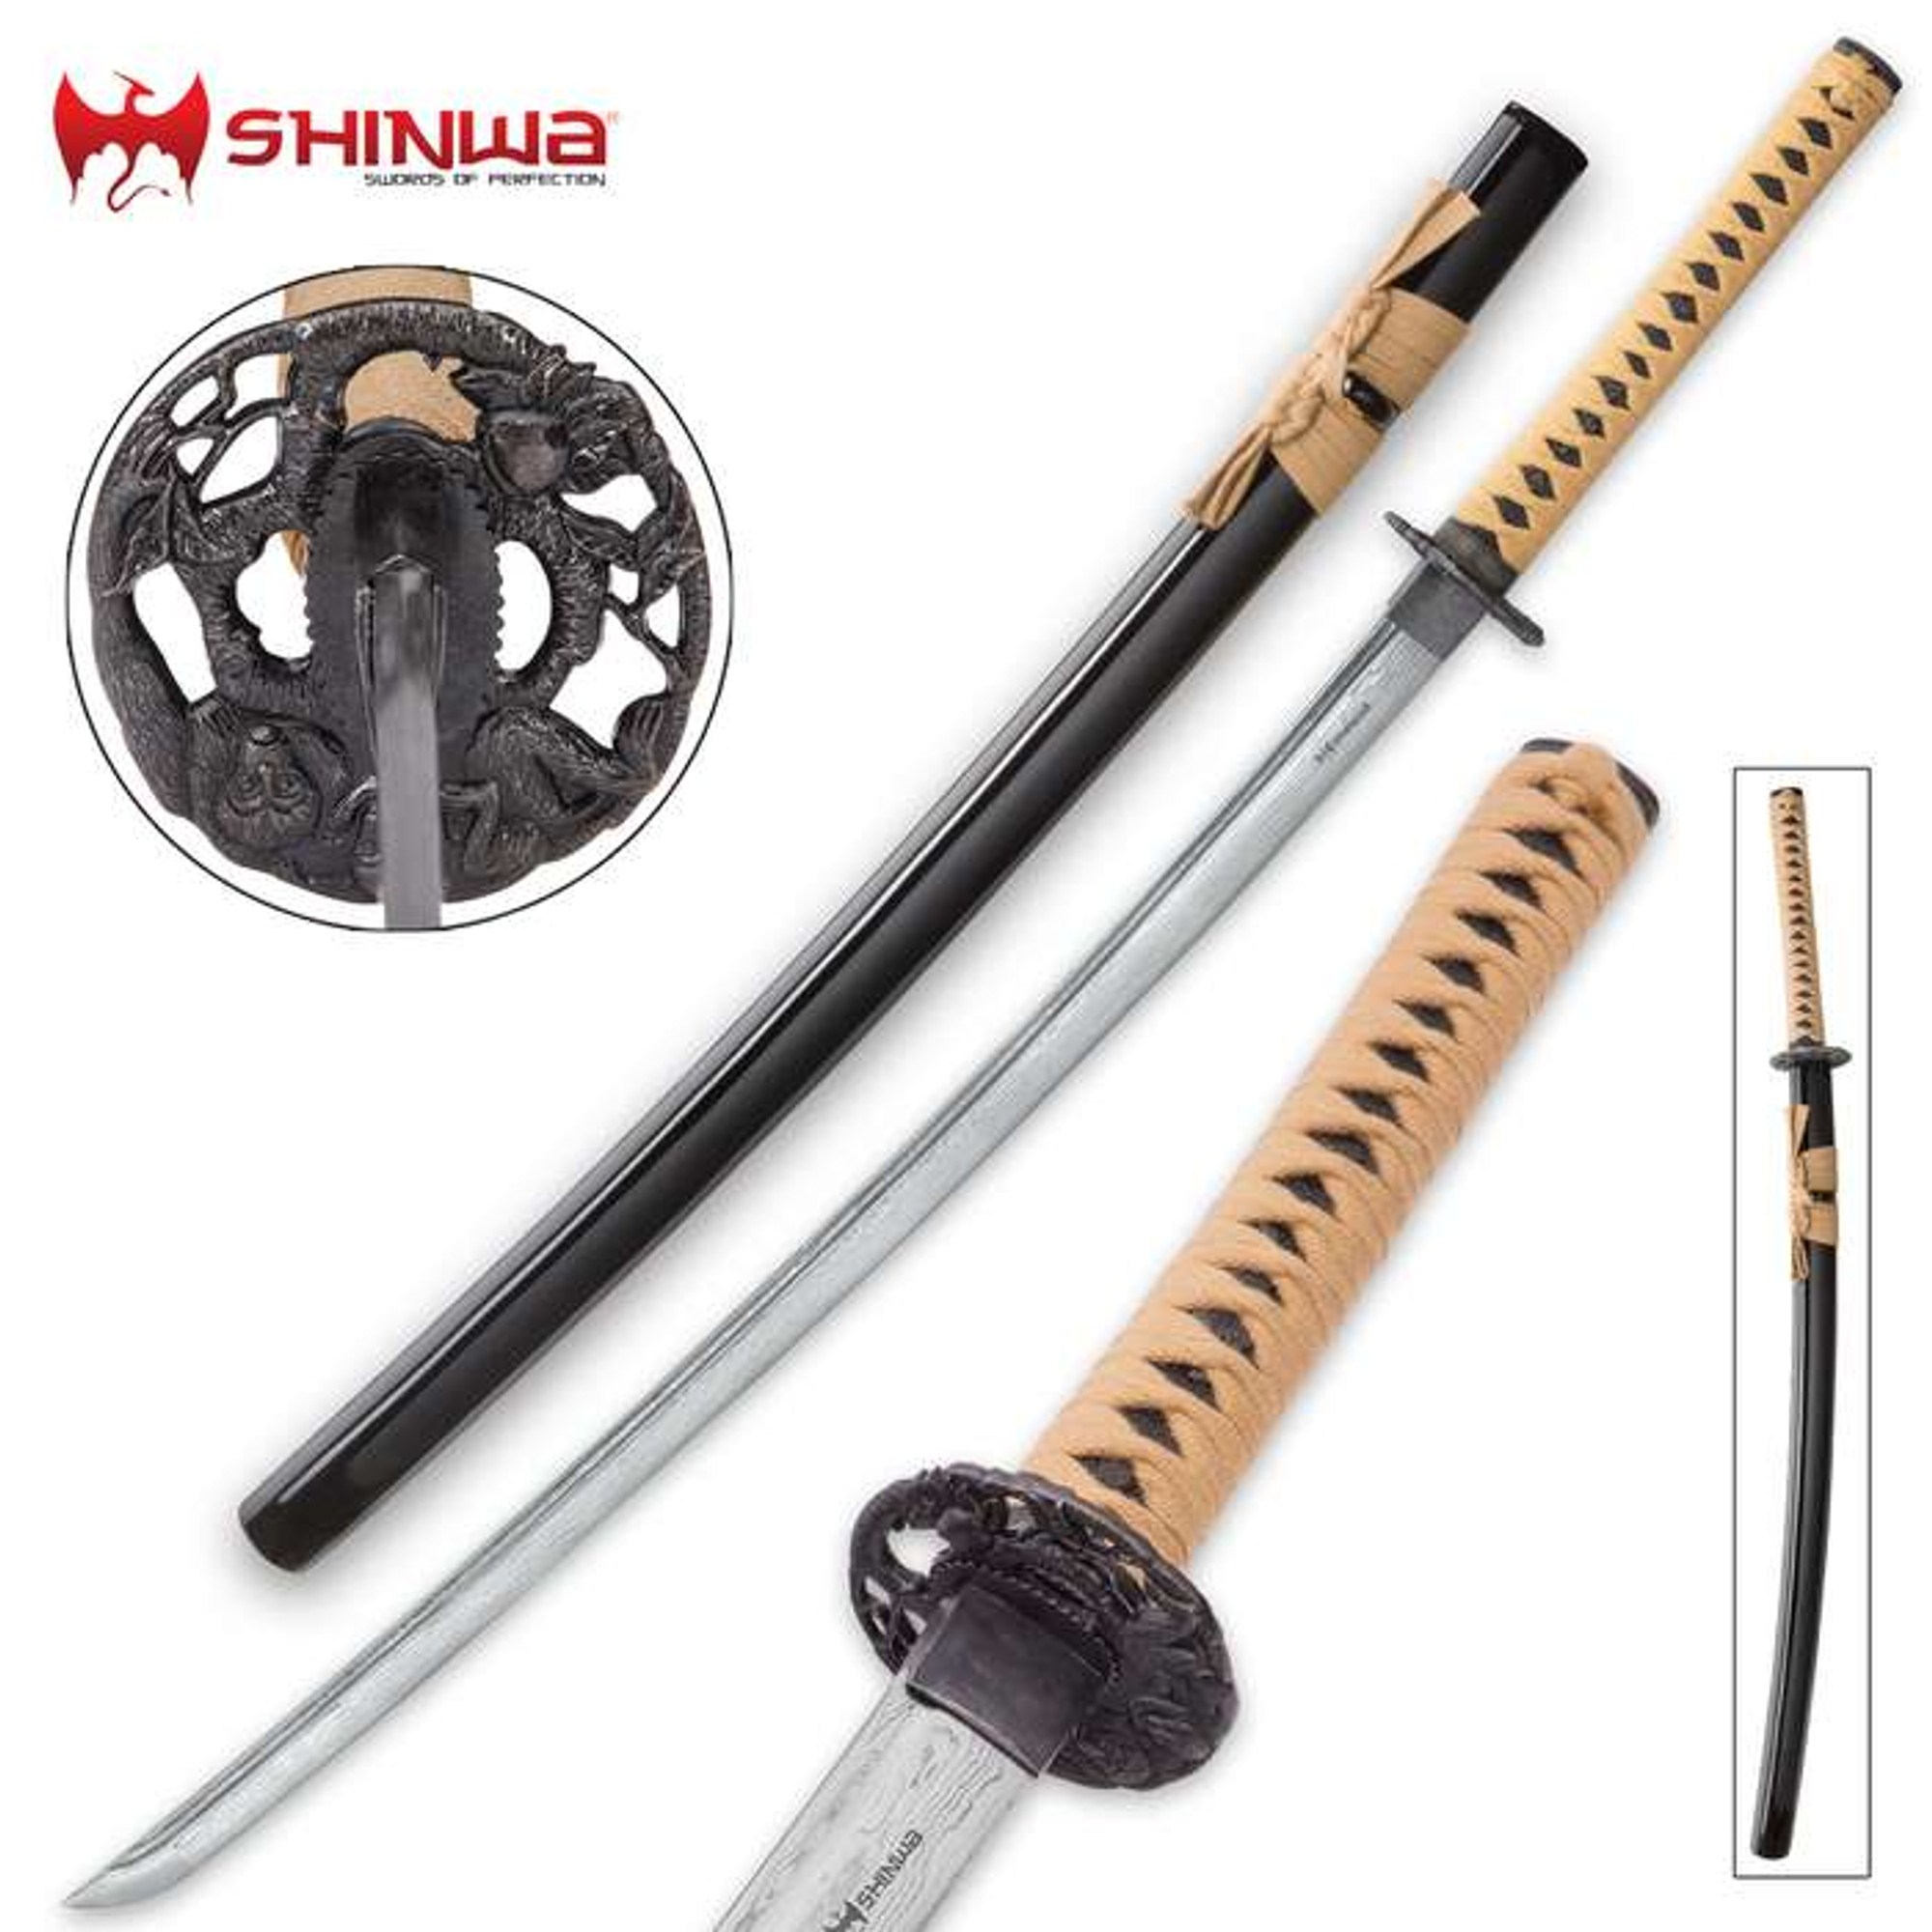 Shinwa Makaku Katana / Samurai Sword - Hand Forged Damascus